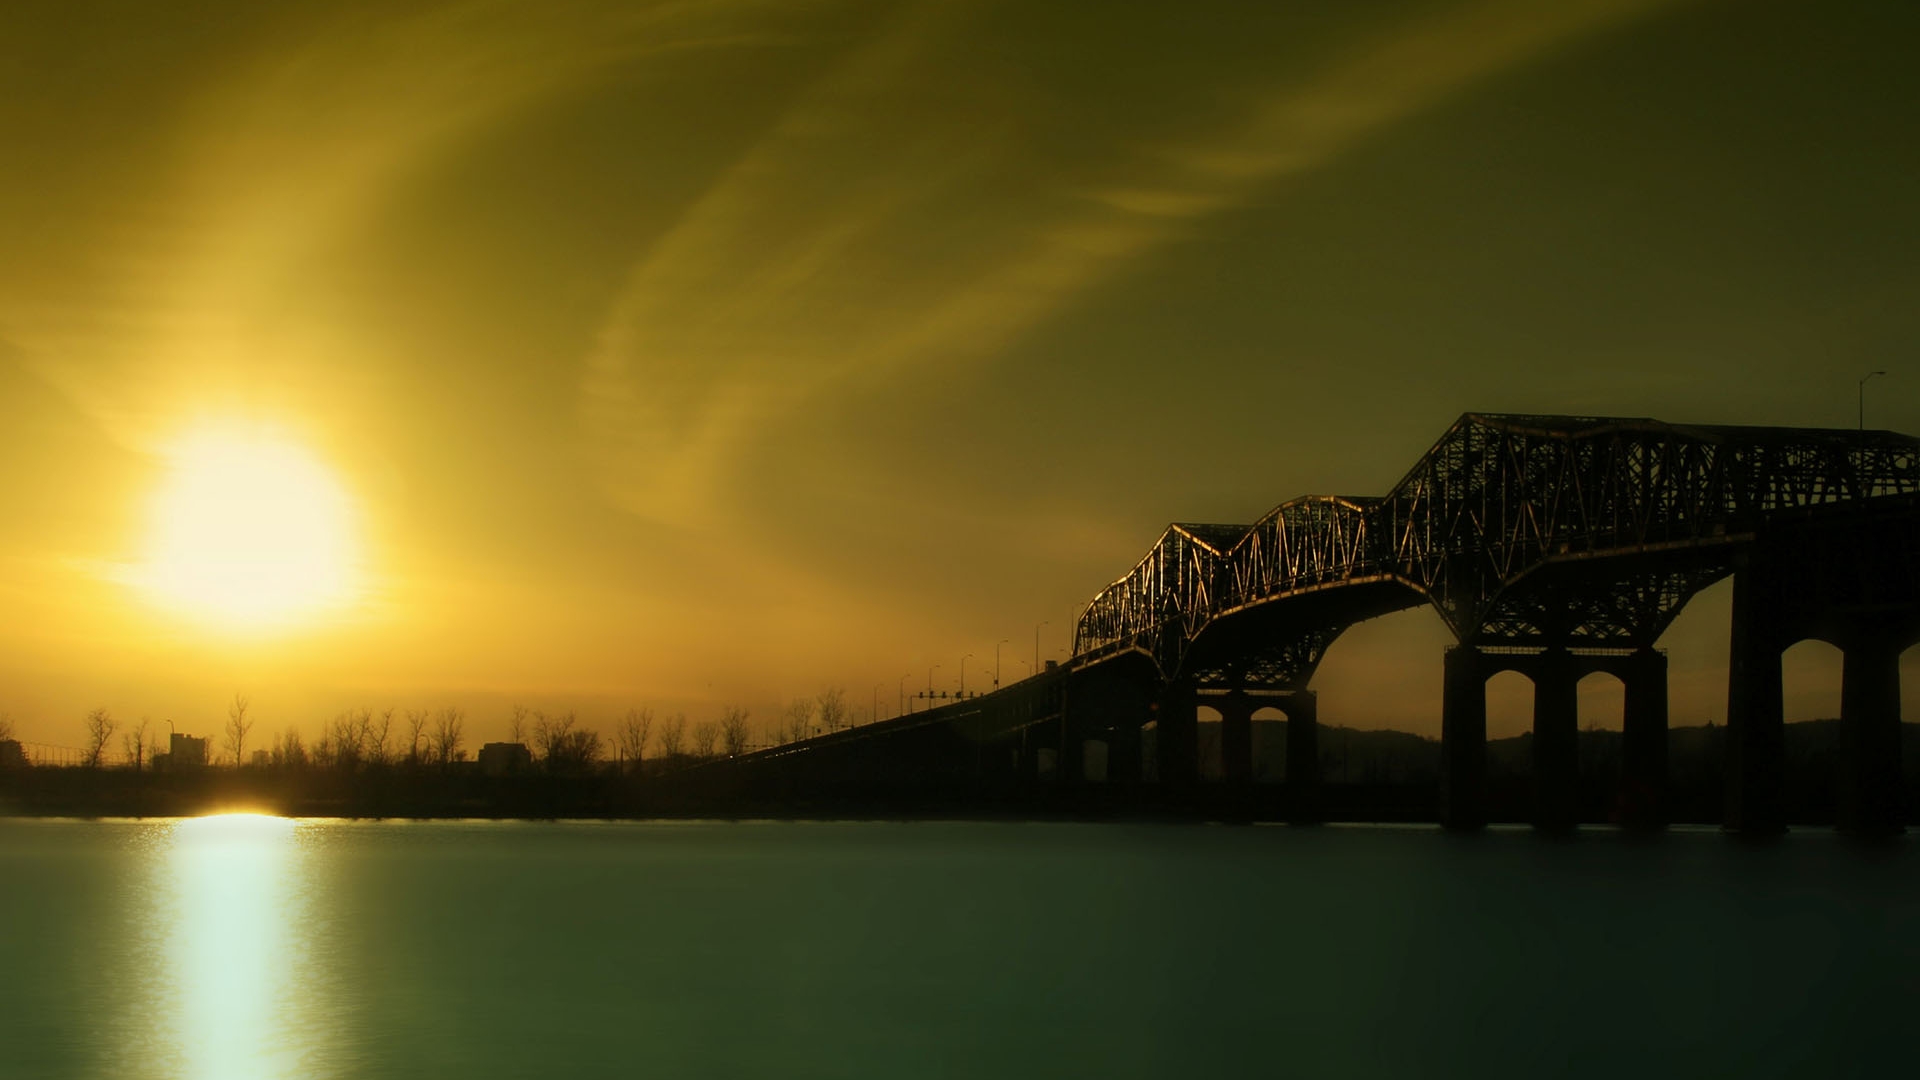 sunset, landscapes, Sun, bridges - desktop wallpaper